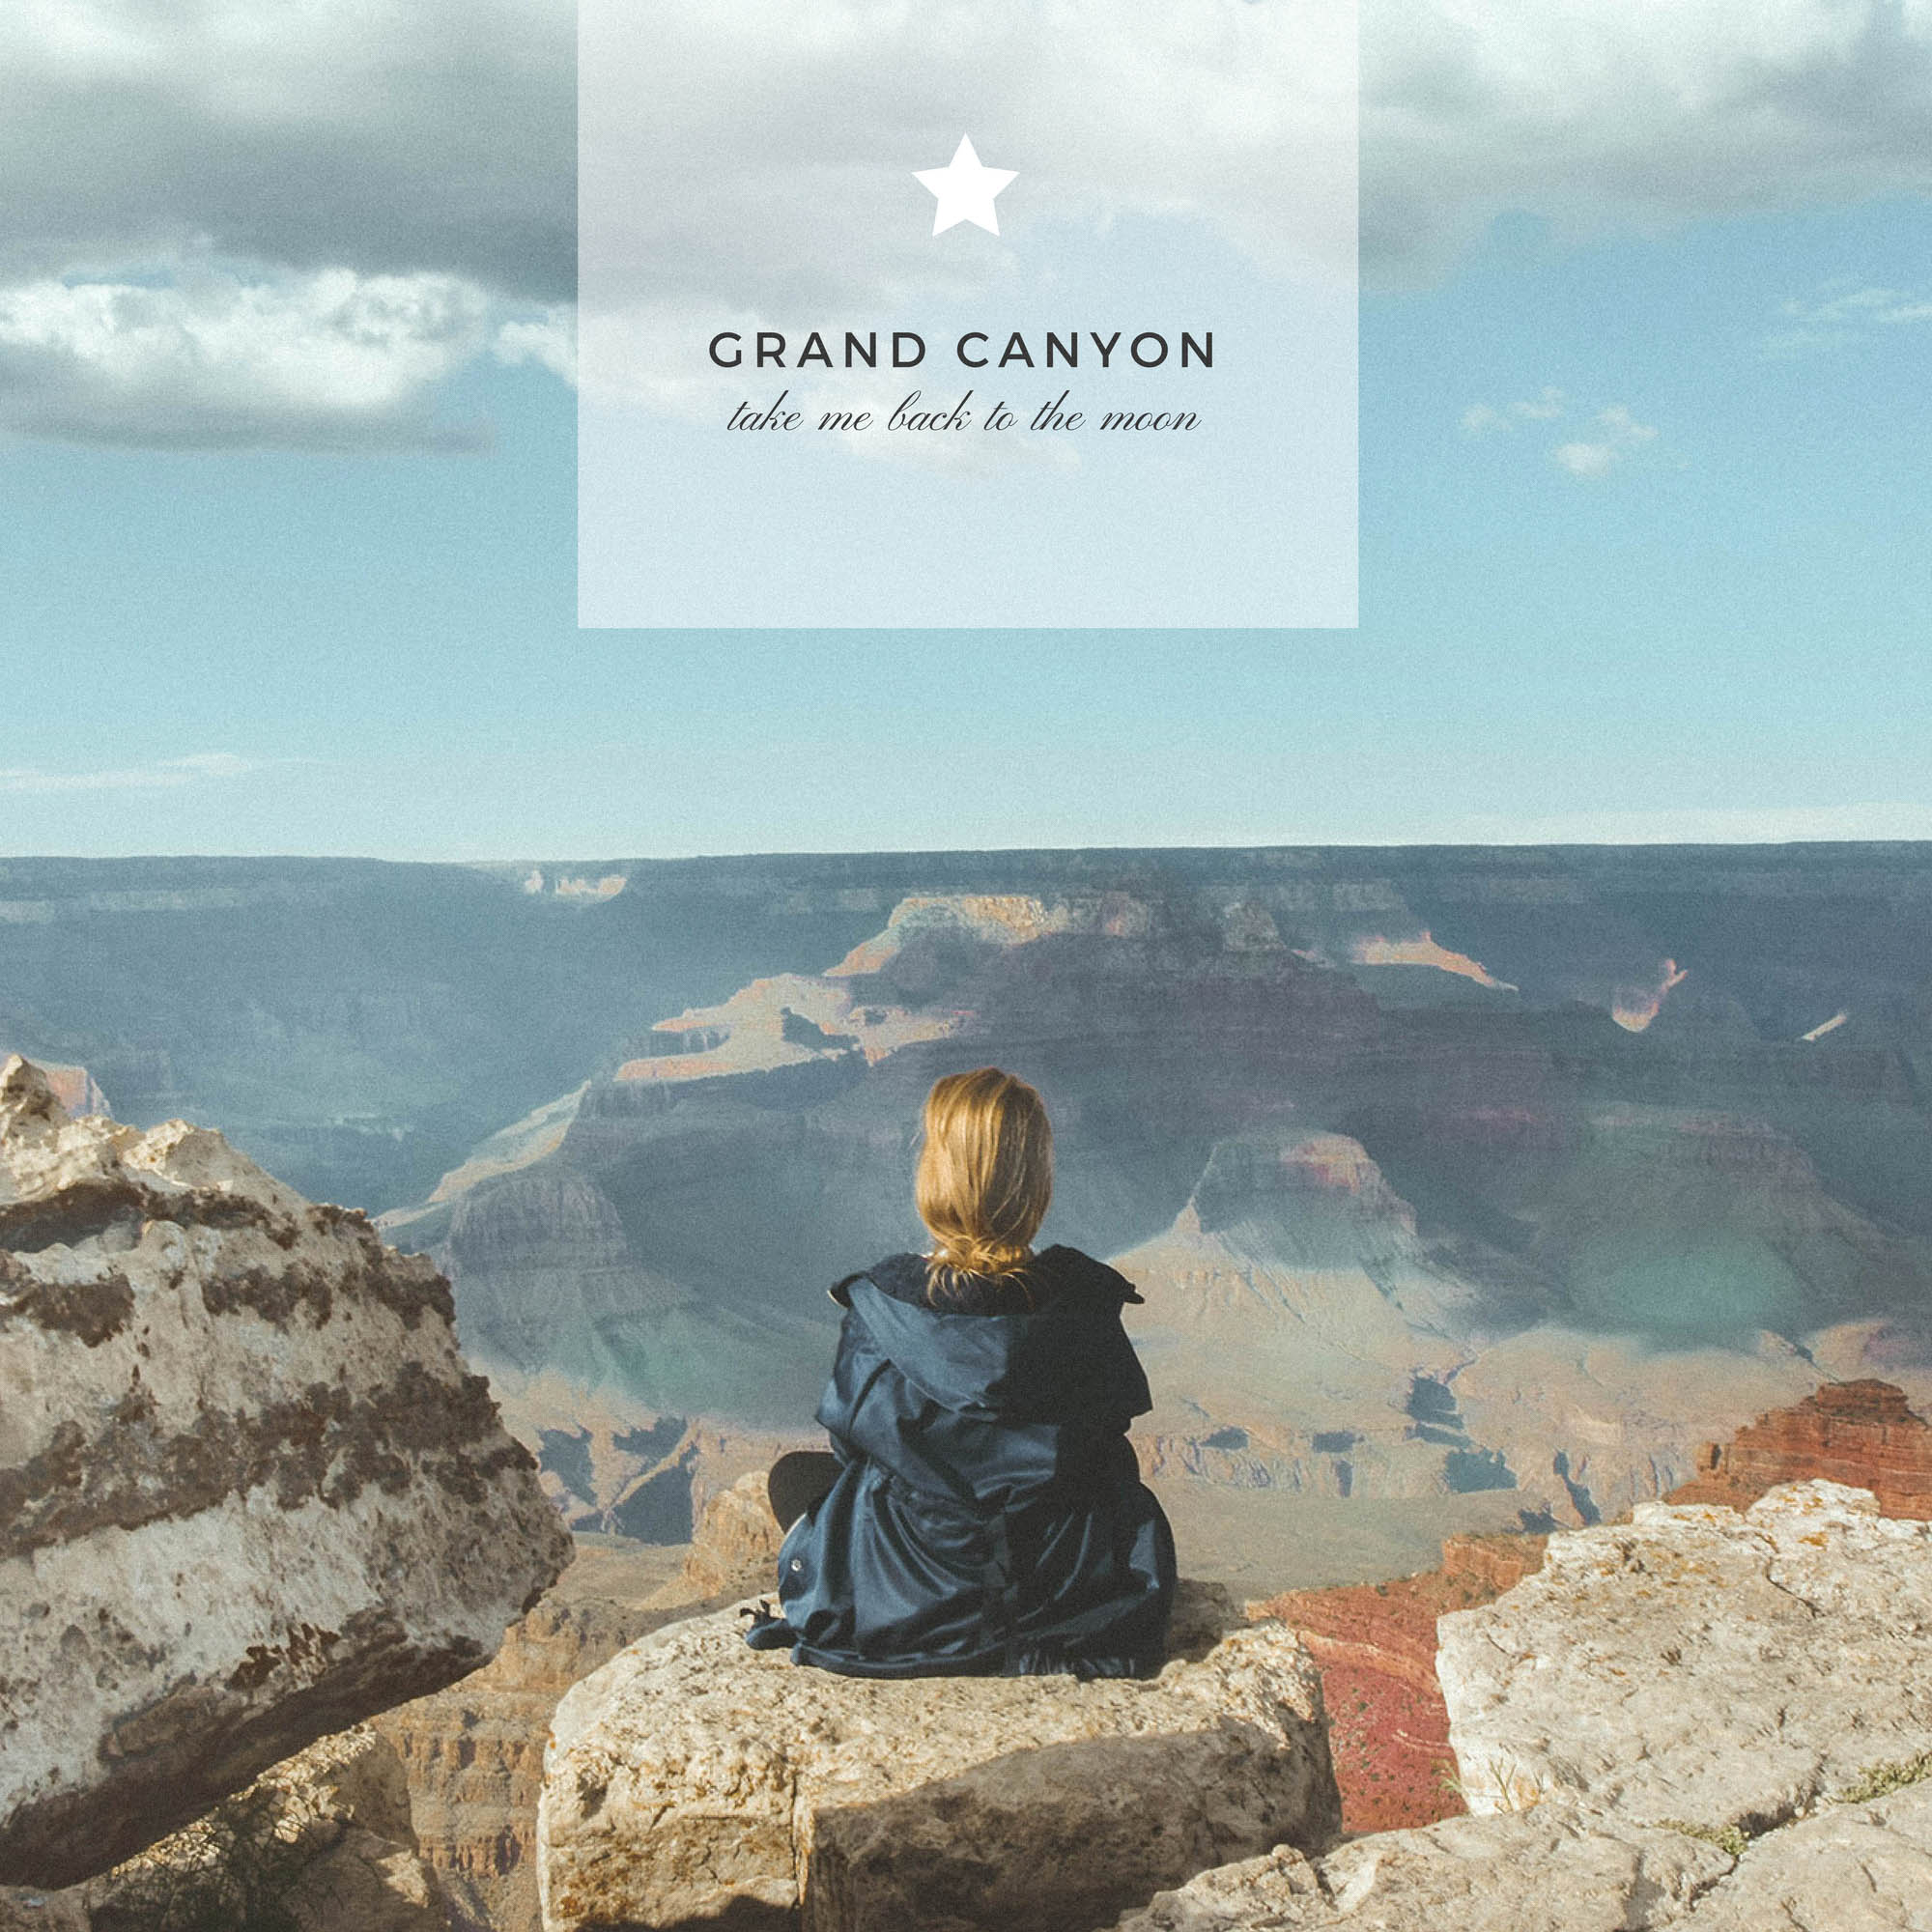 Grand Canyon: chodź, pokażę Ci jak pięknie jest na księżycu!